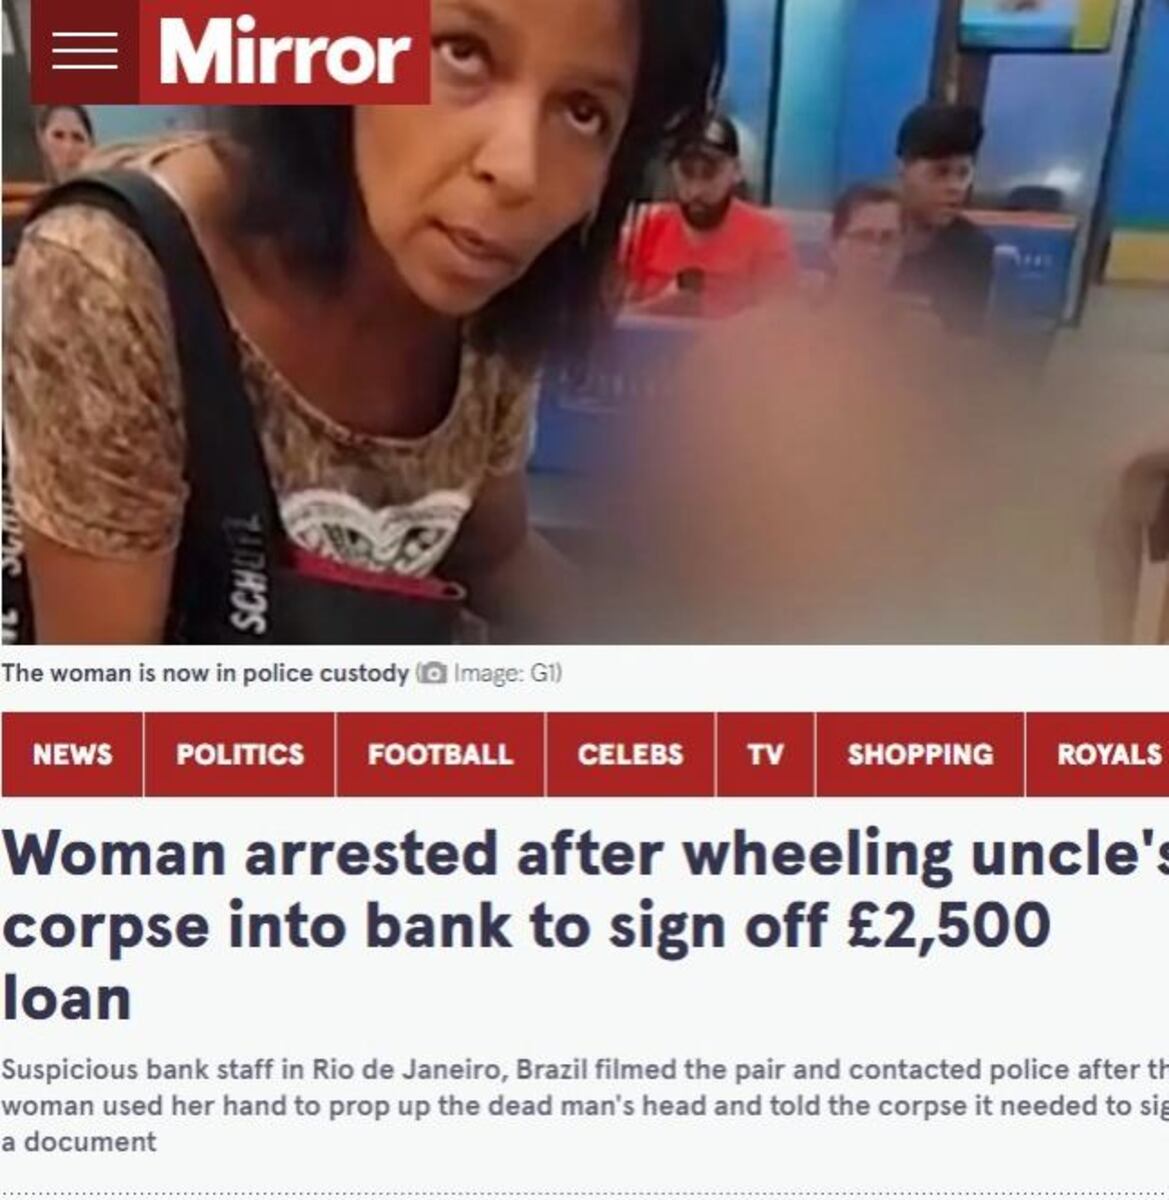 Caso da mulher que levou idoso morto a agência bancária repercutiu no jornal britânico Daily Mirror